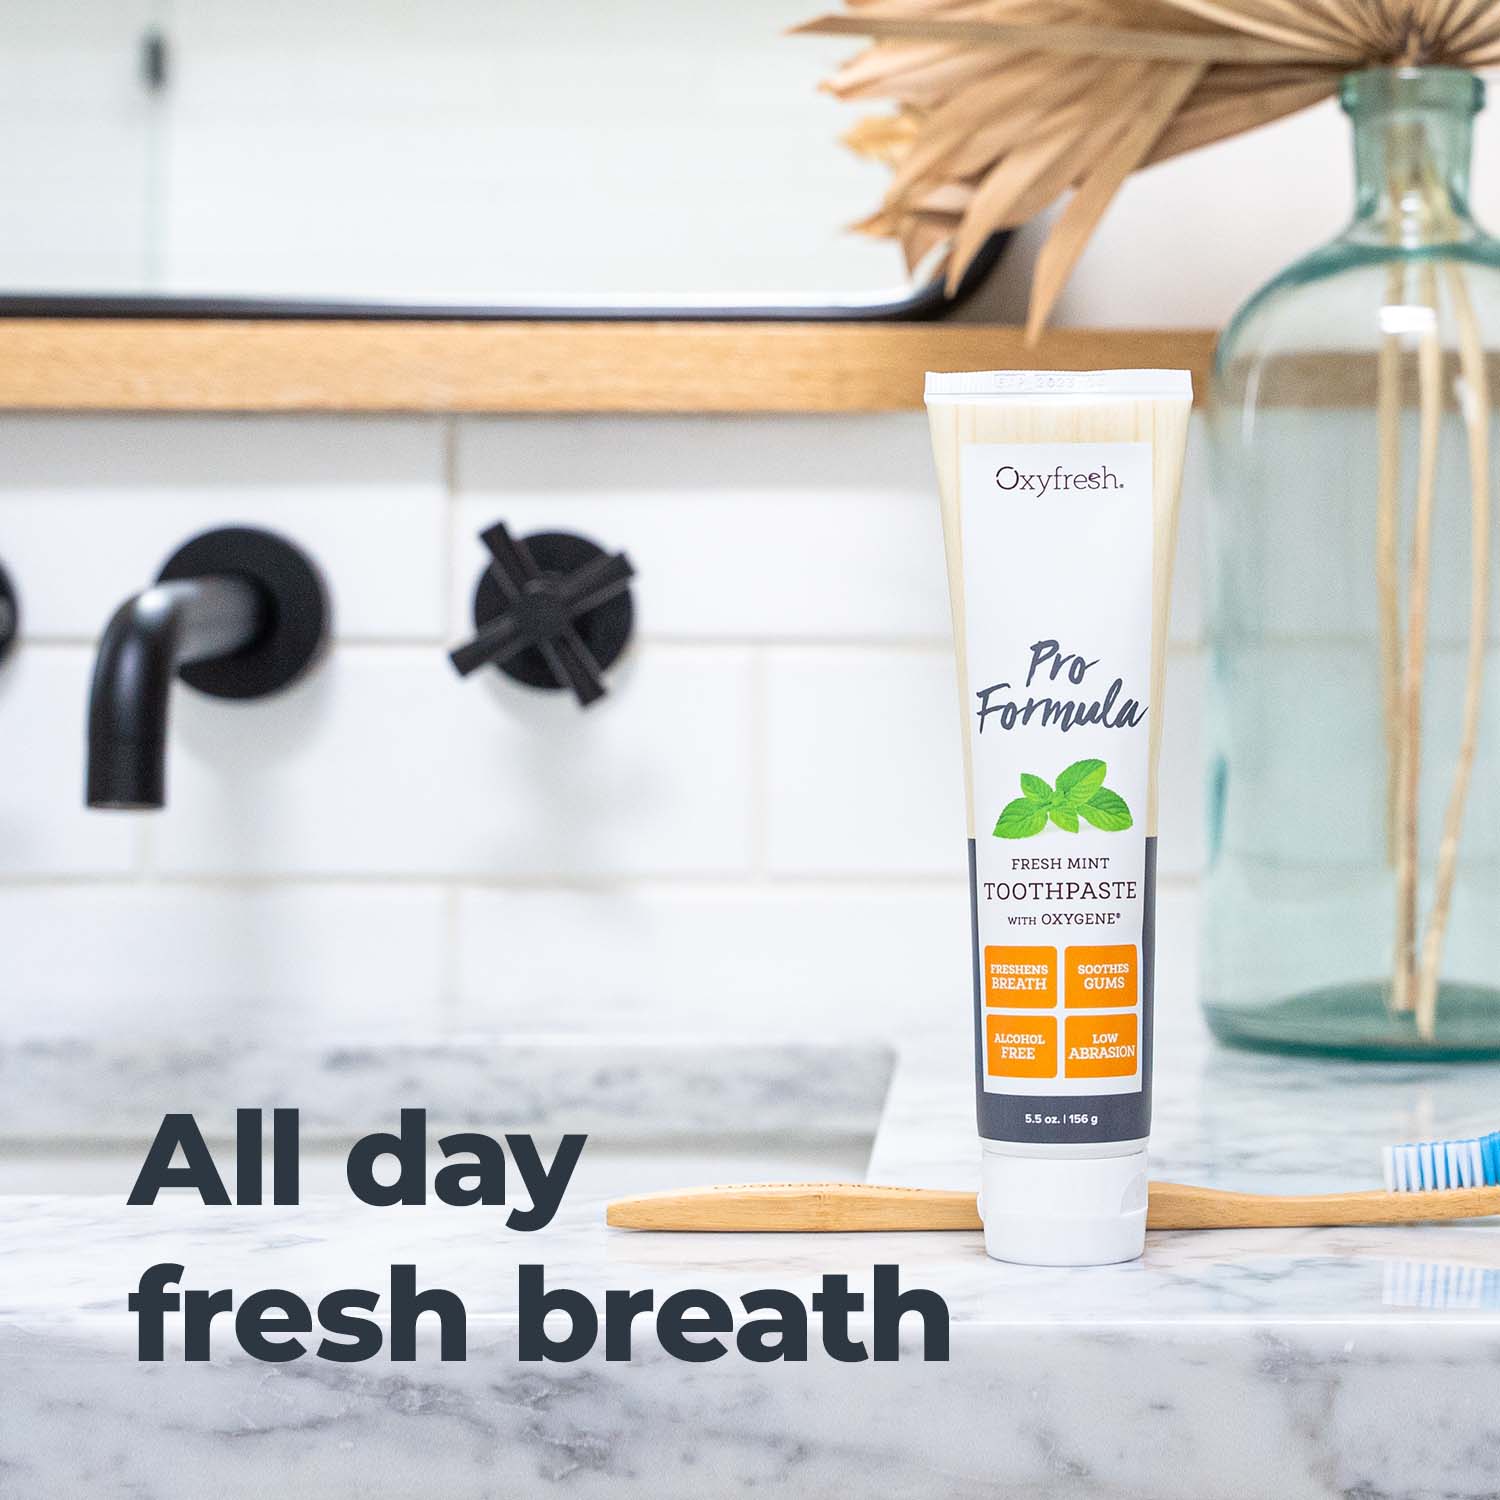 oxyfresh-pro-formula-freshmint-toothpaste-all-day-fresh-breath